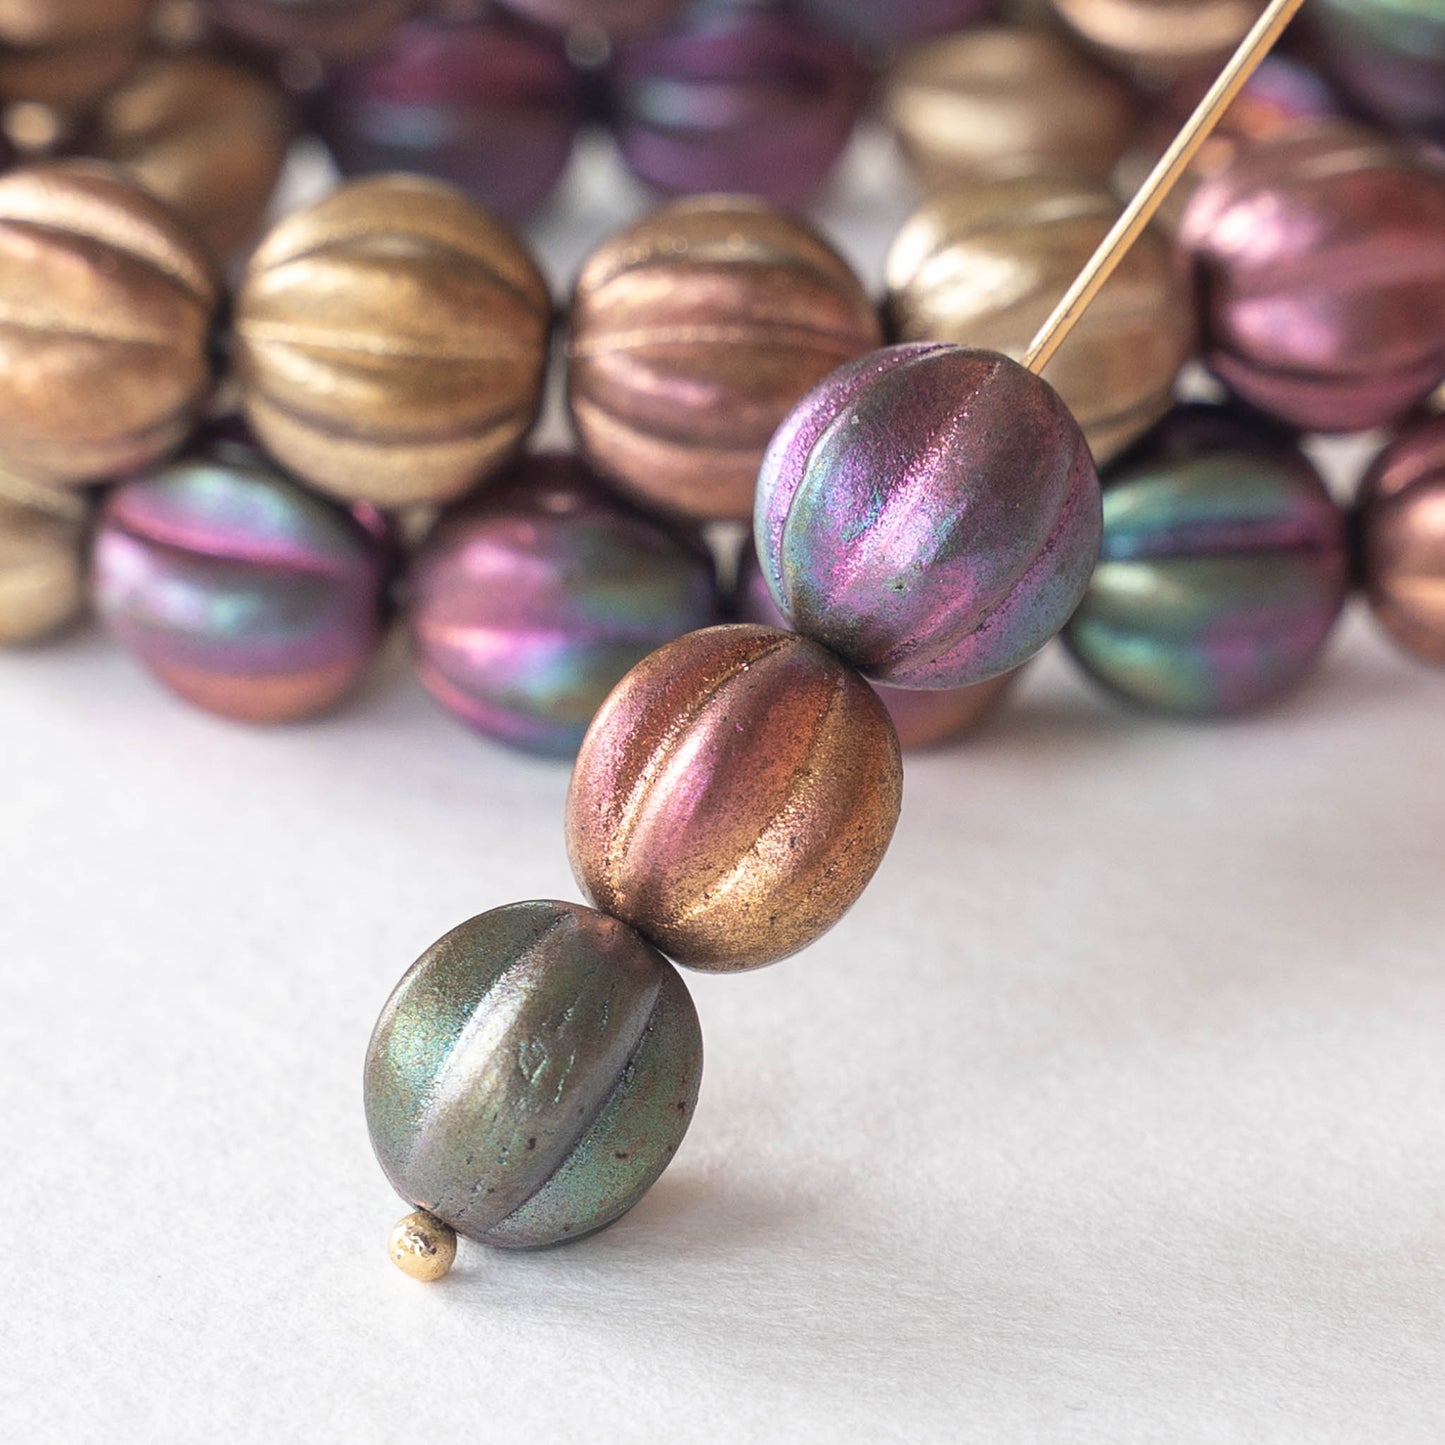 12mm Melon Beads - Metallic Bronze Iris Matte - 15 Beads